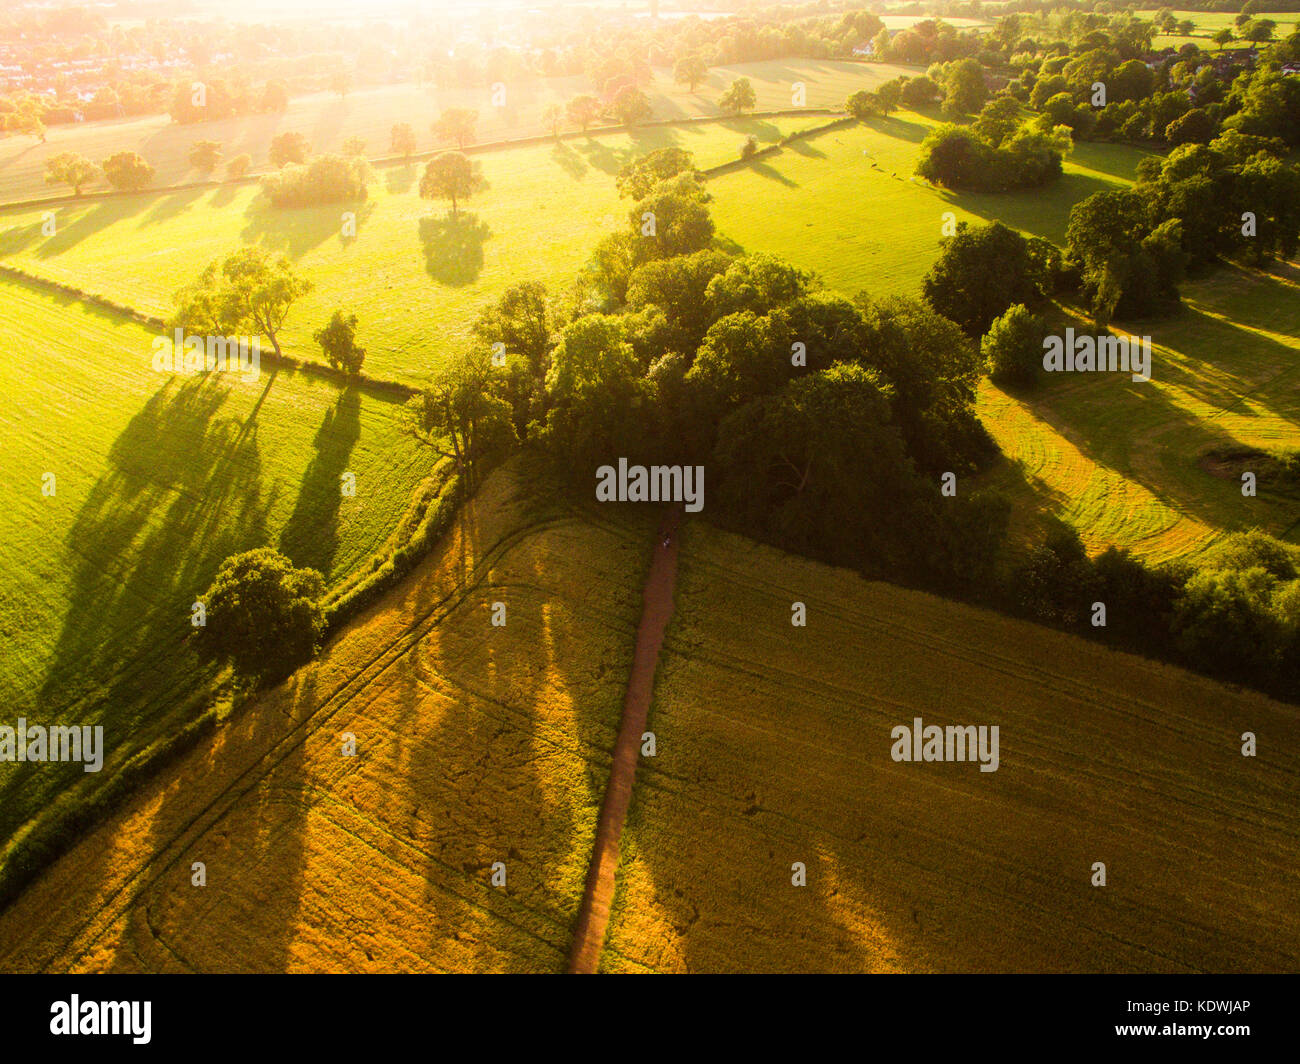 Un beau lever de soleil dans la magnifique campagne de Grande-Bretagne capturées à l'aide d'un drone Dji phantom 3 standard Banque D'Images